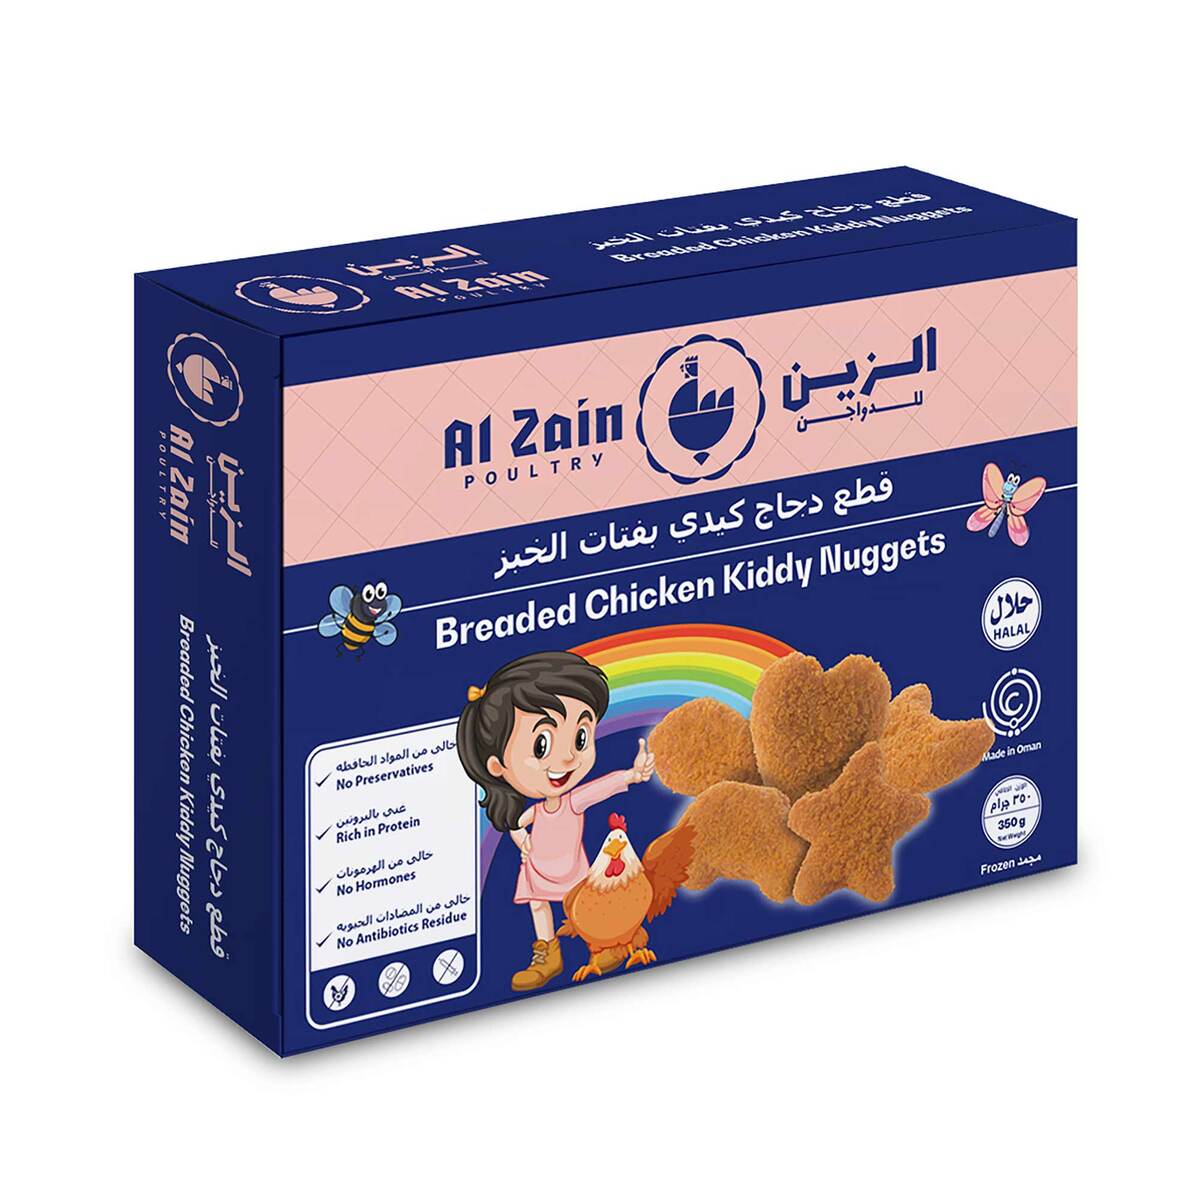 Al Zain Breaded Chicken Kiddy Nuggets 350 g